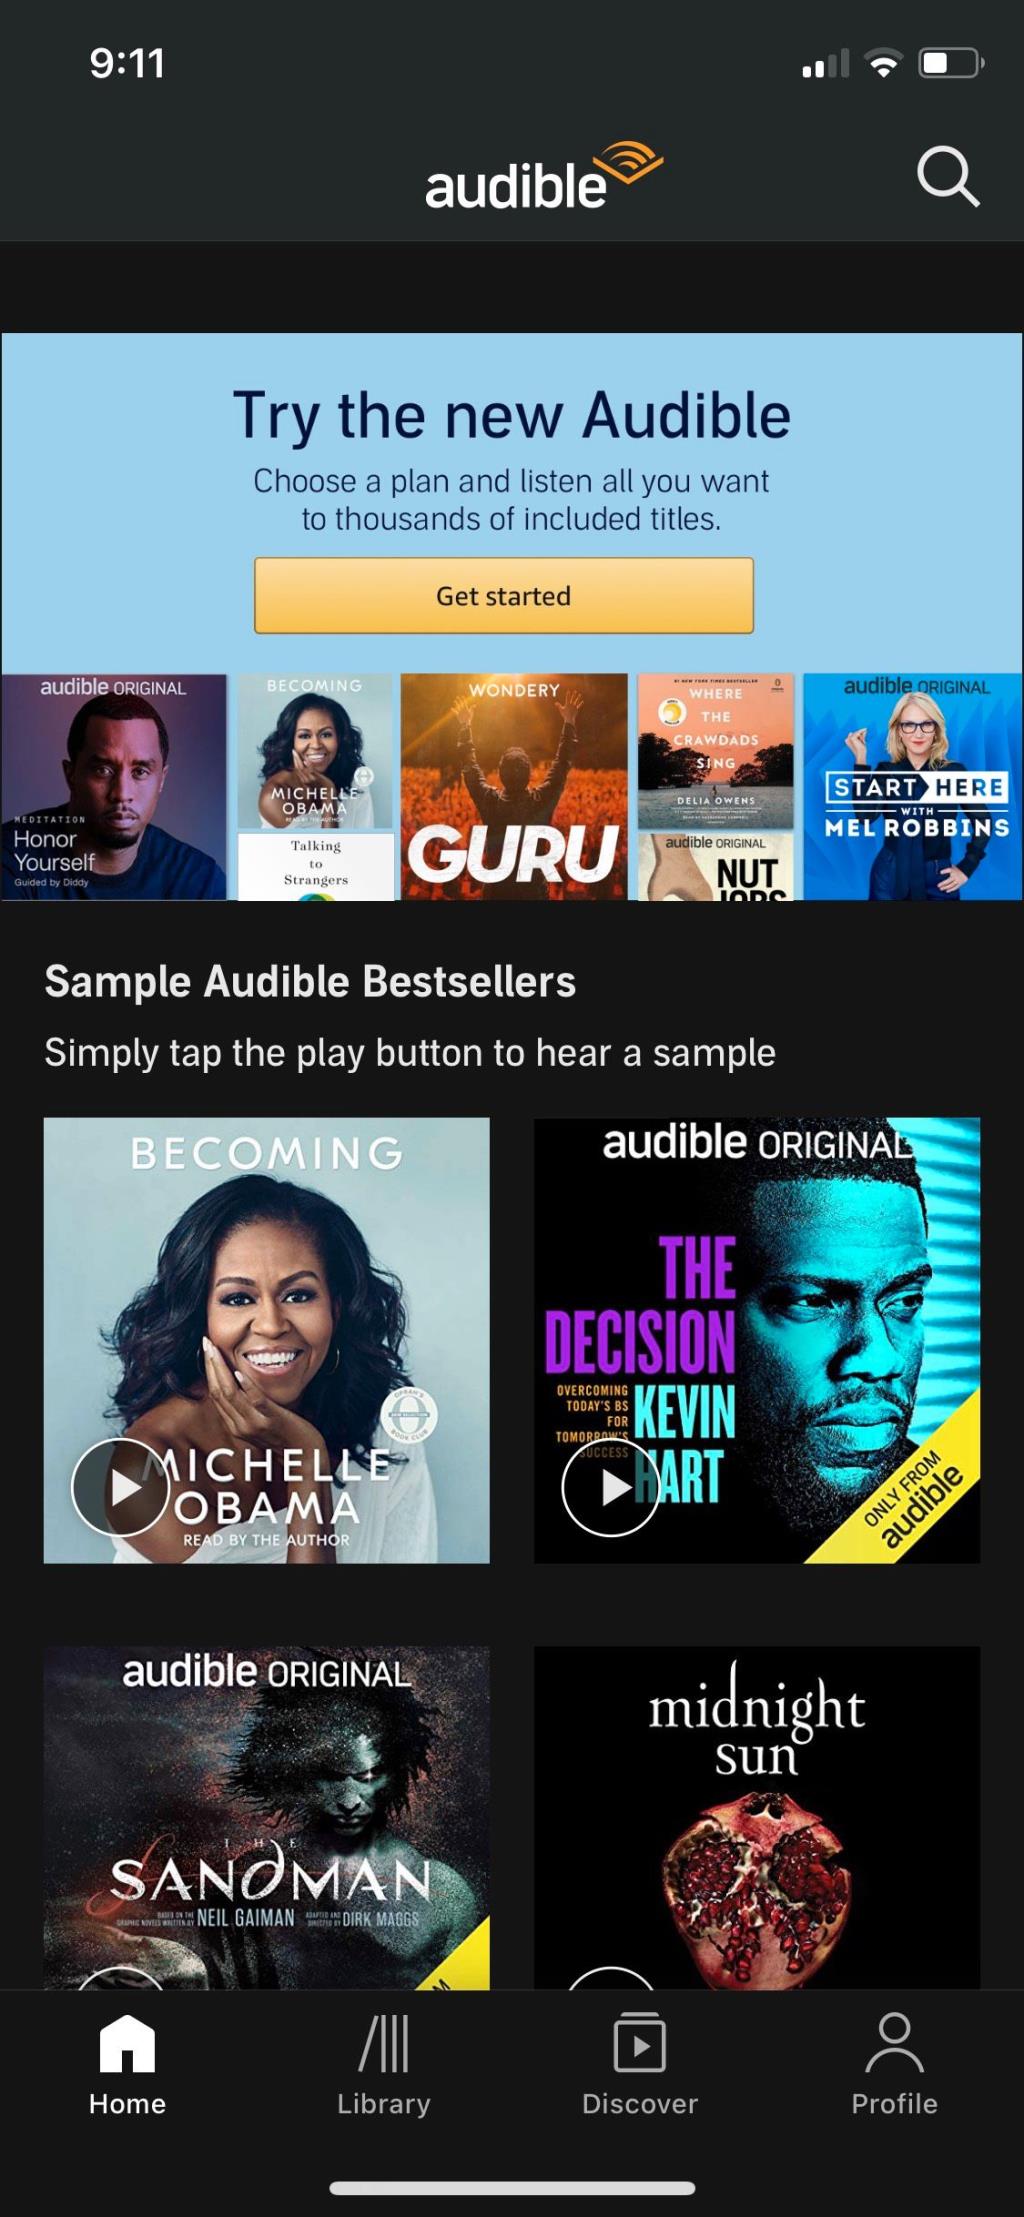 Las 6 mejores aplicaciones de audiolibros para iPhone y iPad